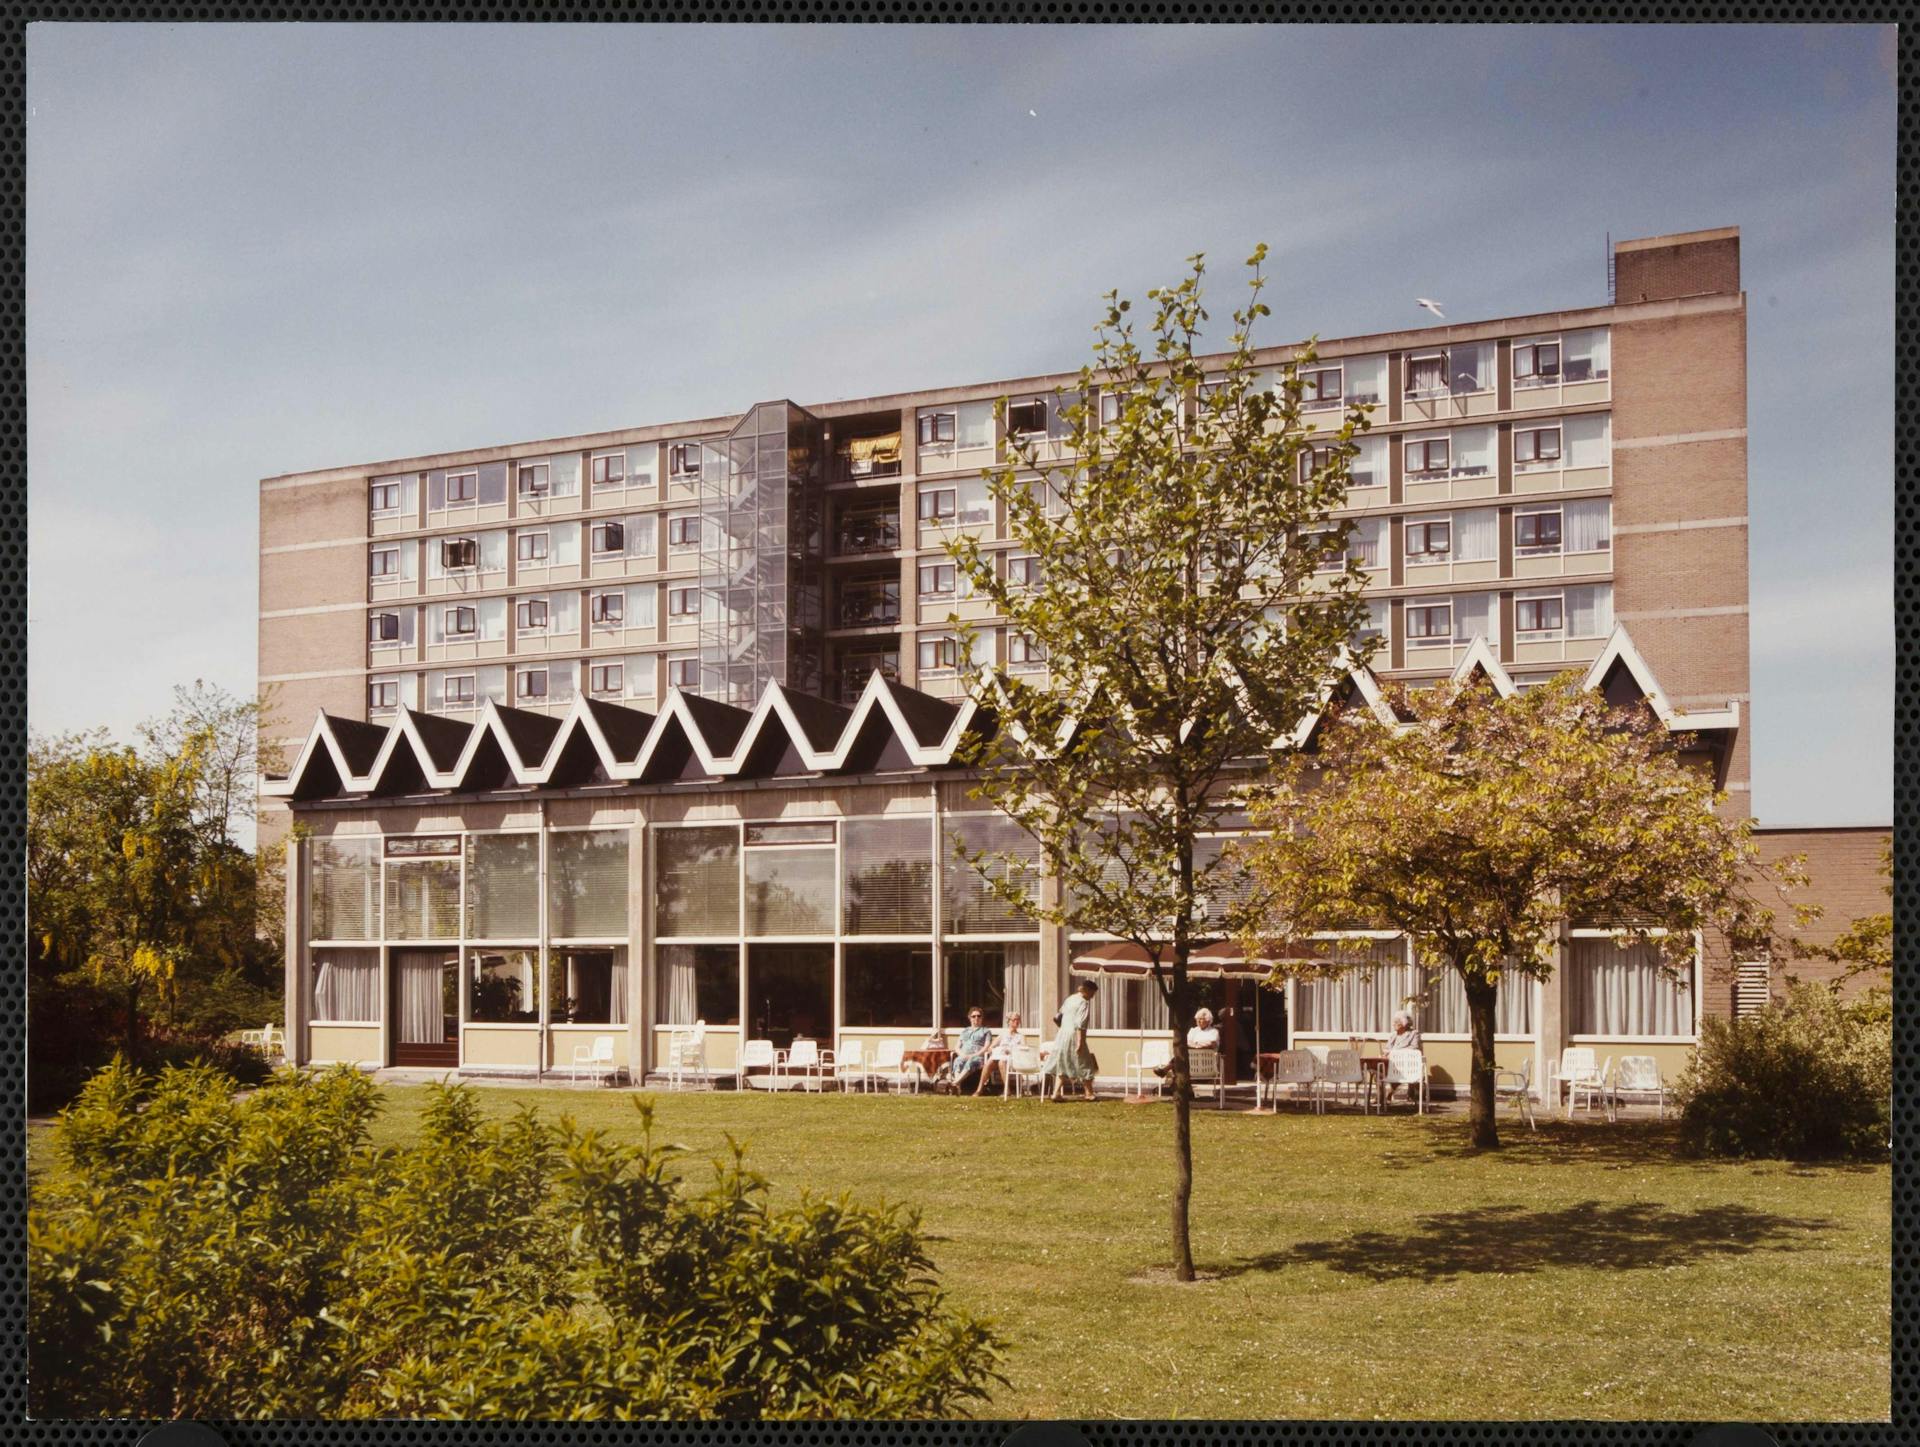  J.P. Kloos, Bejaardencentrum 'De Heemhaven', Heemstede, 1963-1968. Collectie Het Nieuwe Instituut, KLOO ph64 